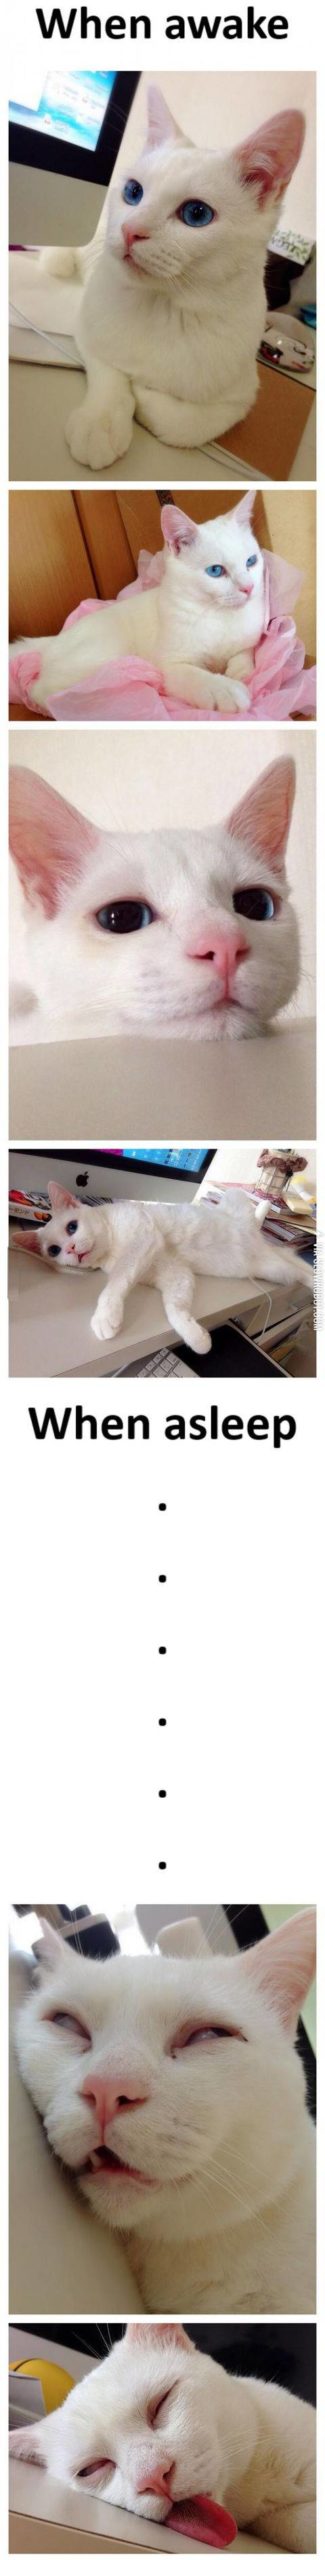 My+cat+when+it%26%238217%3Bs+awake+vs.+when+it%26%238217%3Bs+asleep.